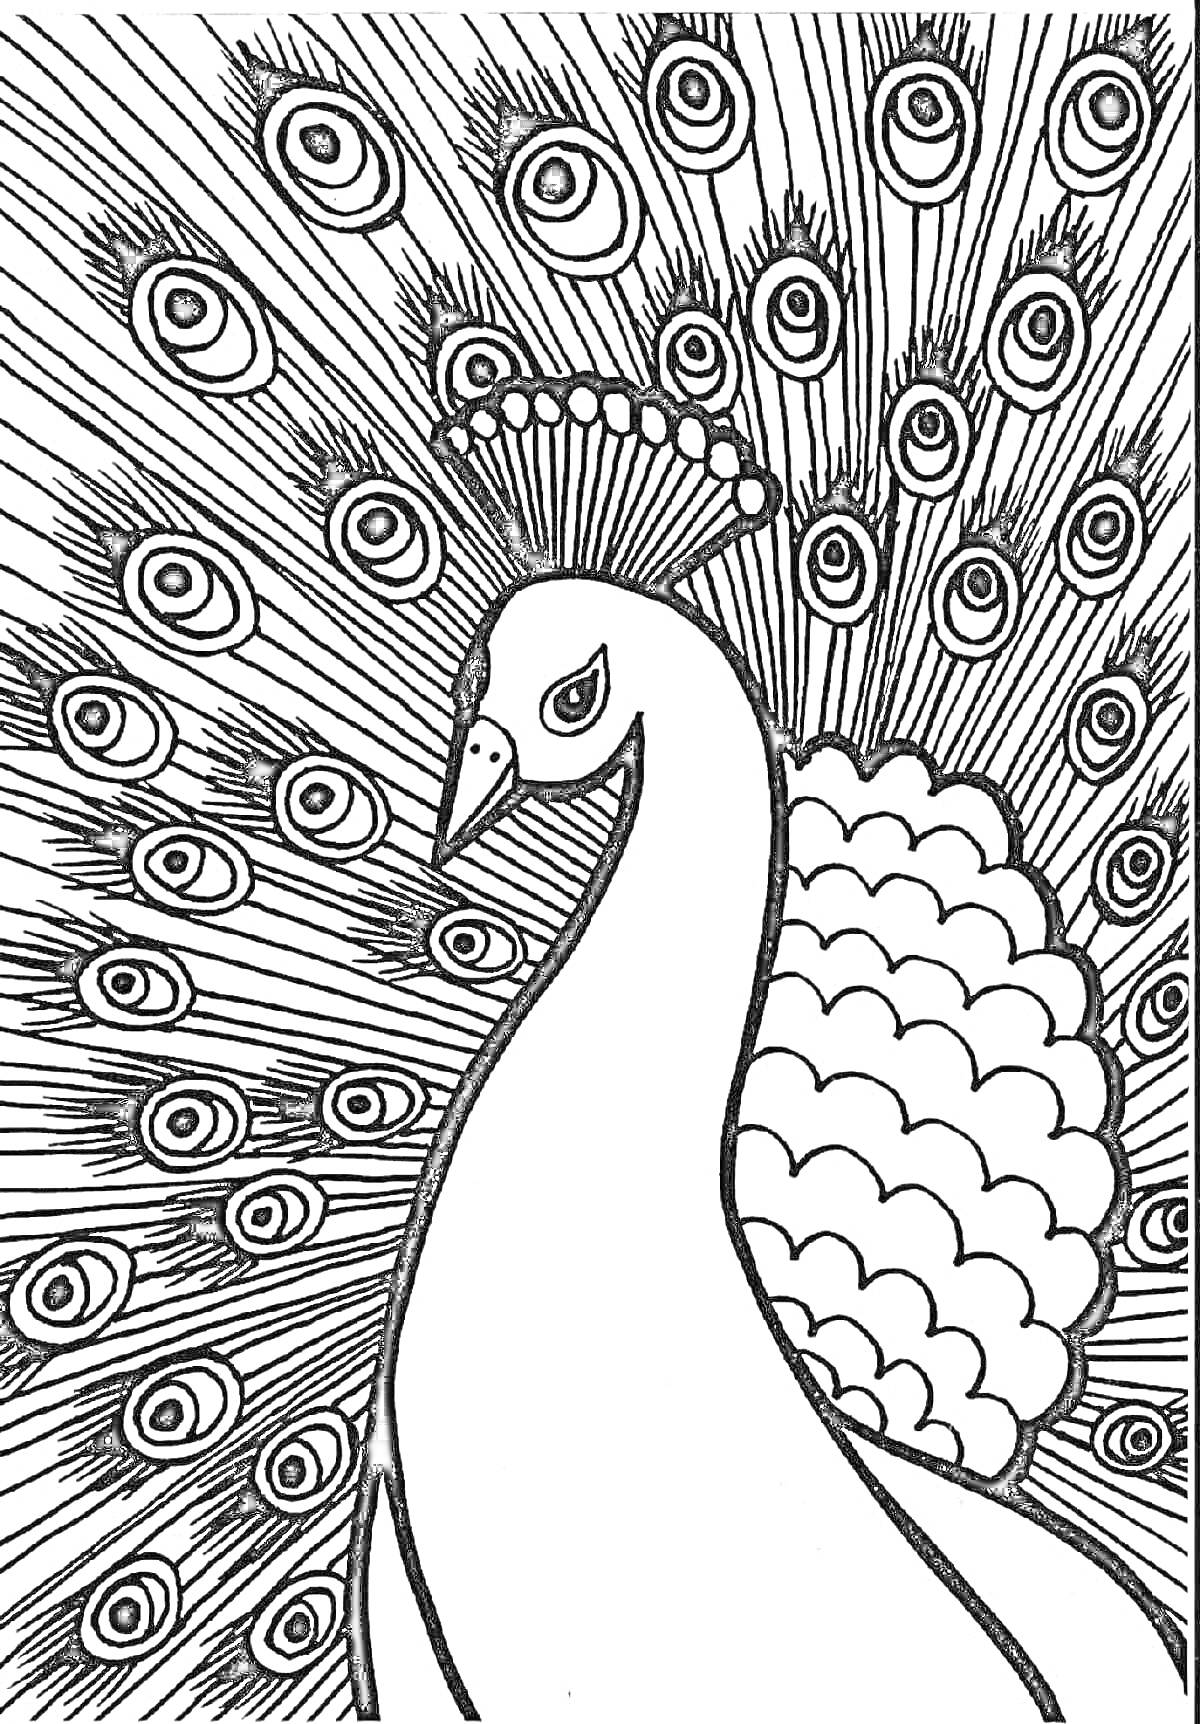 Раскраска с павлином, крупный павлин с распущенным хвостом, украшенным глазчатыми перьями